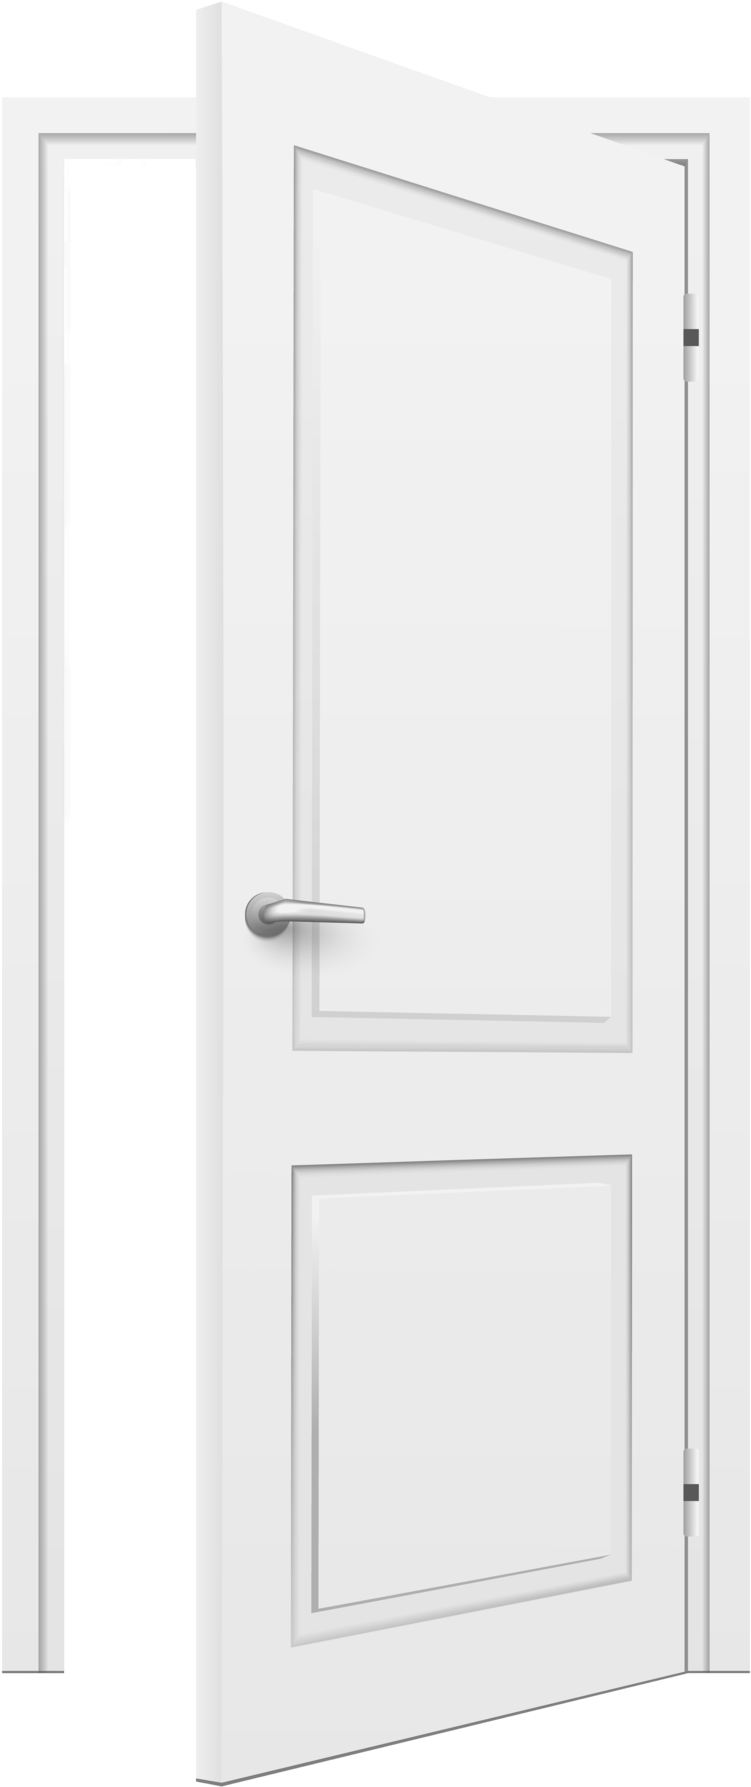 White Door Png 751 X 1787